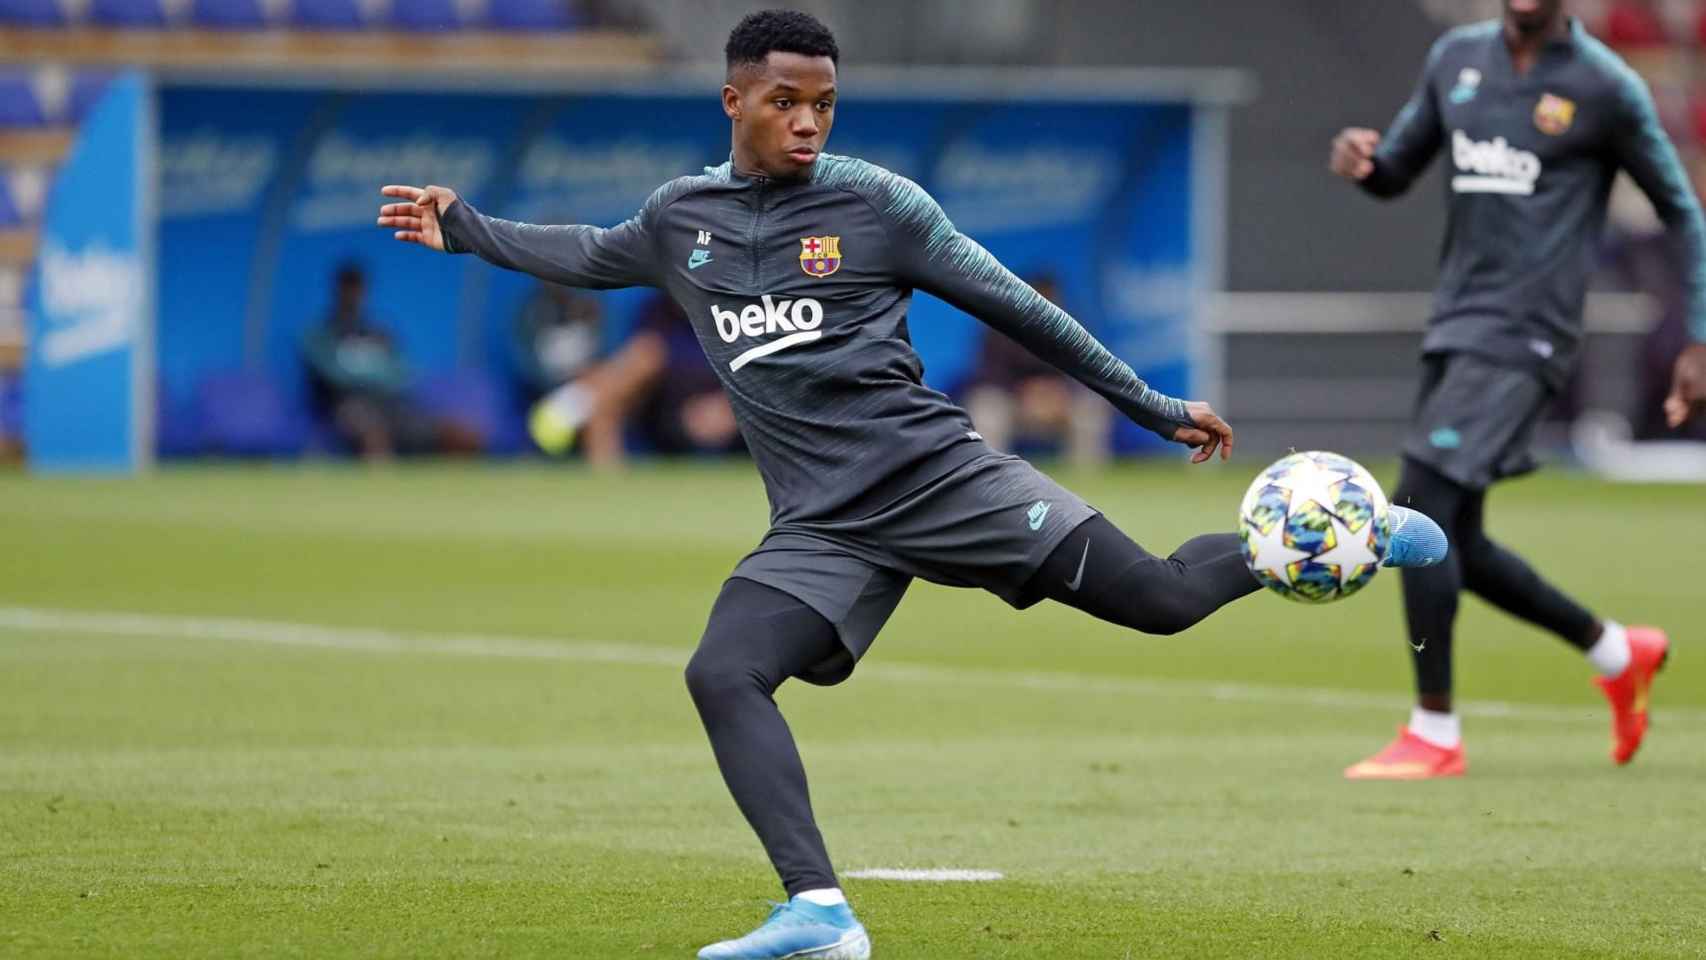 Ansu Fati rematando a portería en un entrenamiento del Barça / FC Barcelona